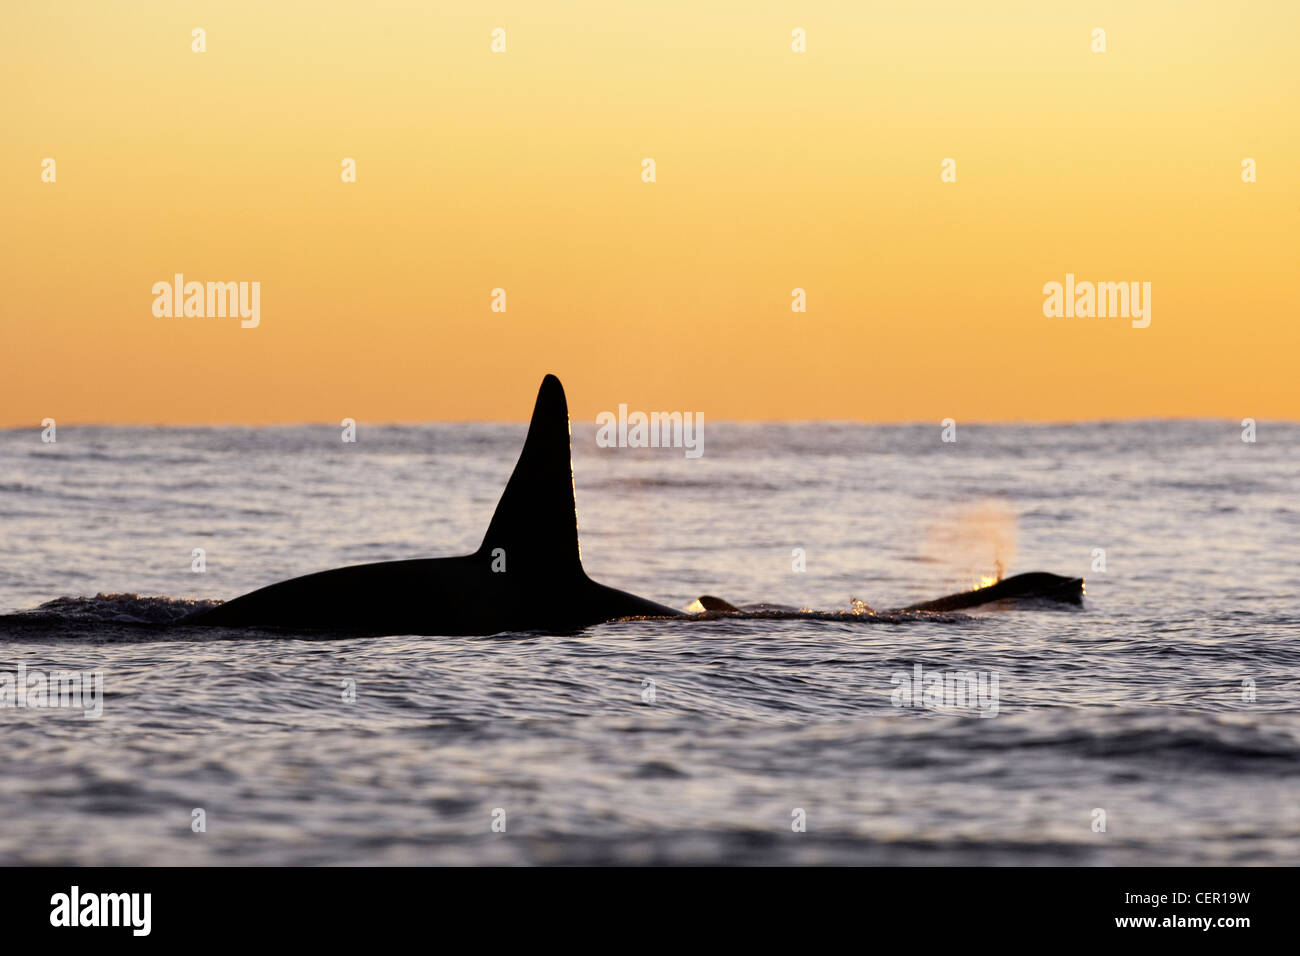 Killer Whale Orca sulla superficie dell'acqua, Orcinus orca, Oceano Atlantico, Norvegia Foto Stock